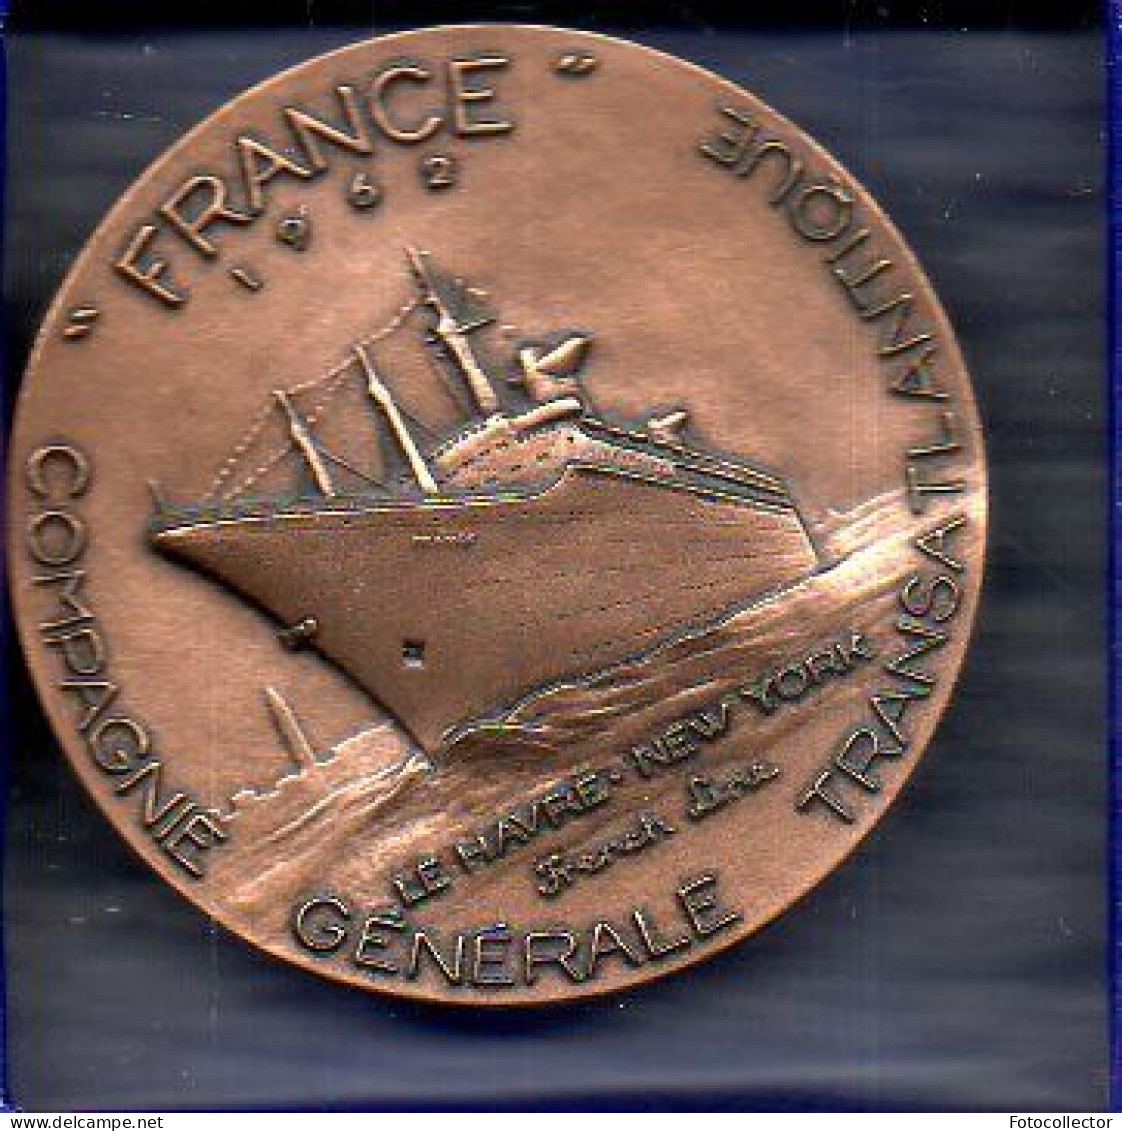 Médaille Paquebot France Par Monnaie De Paris 1962 - Professionals / Firms